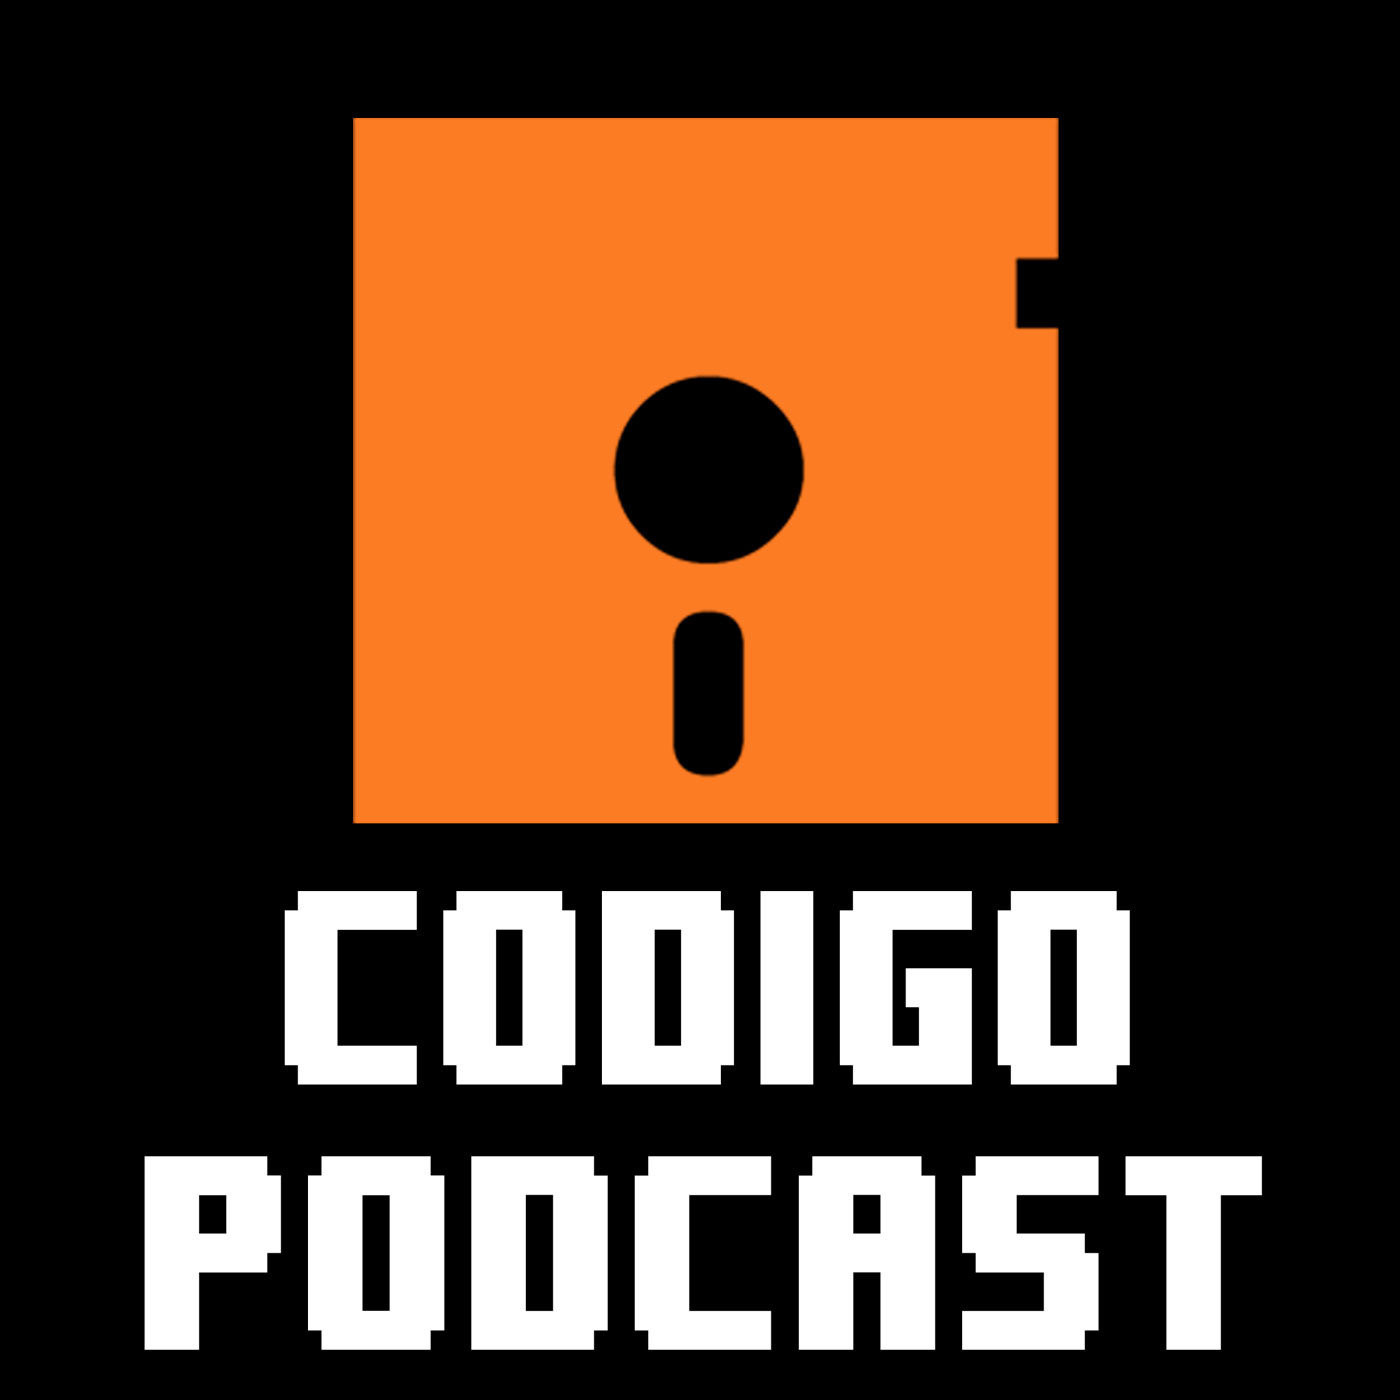 Código Podcast